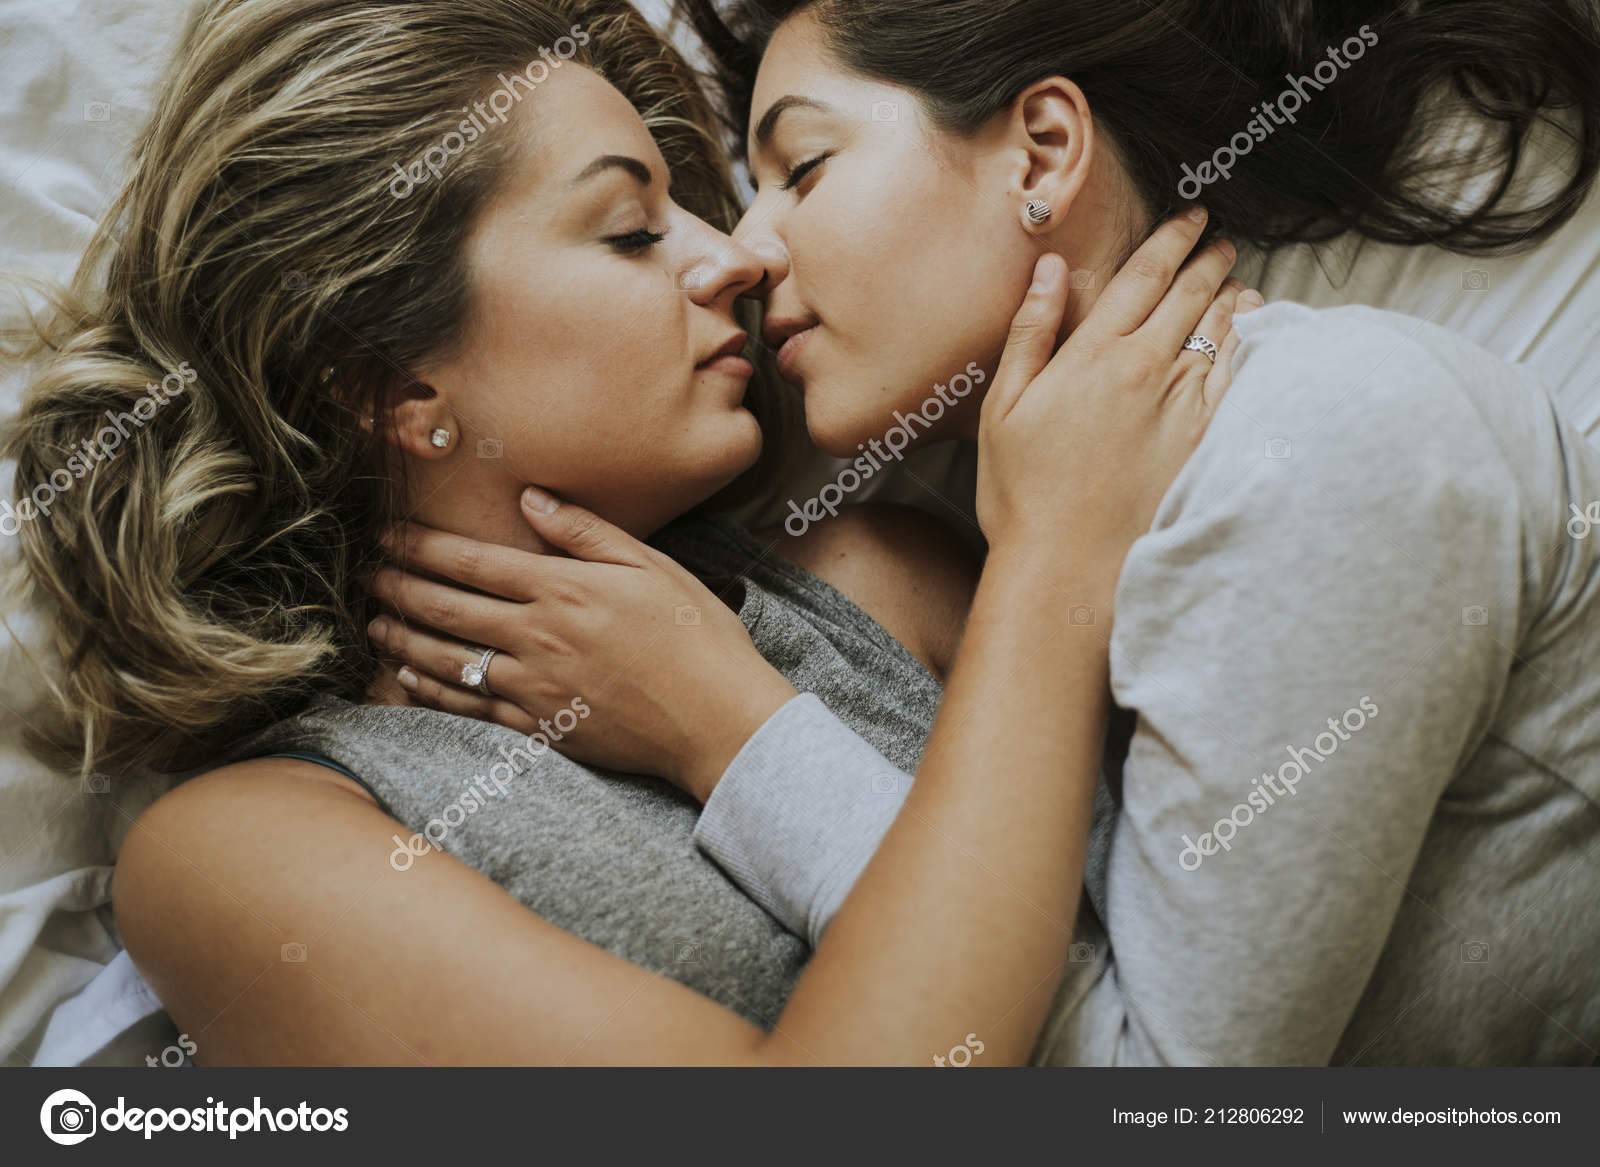 λεσβίες δωρεάν φωτογραφίες πιο χαριτωμένο μαύρο πορνοστάρ